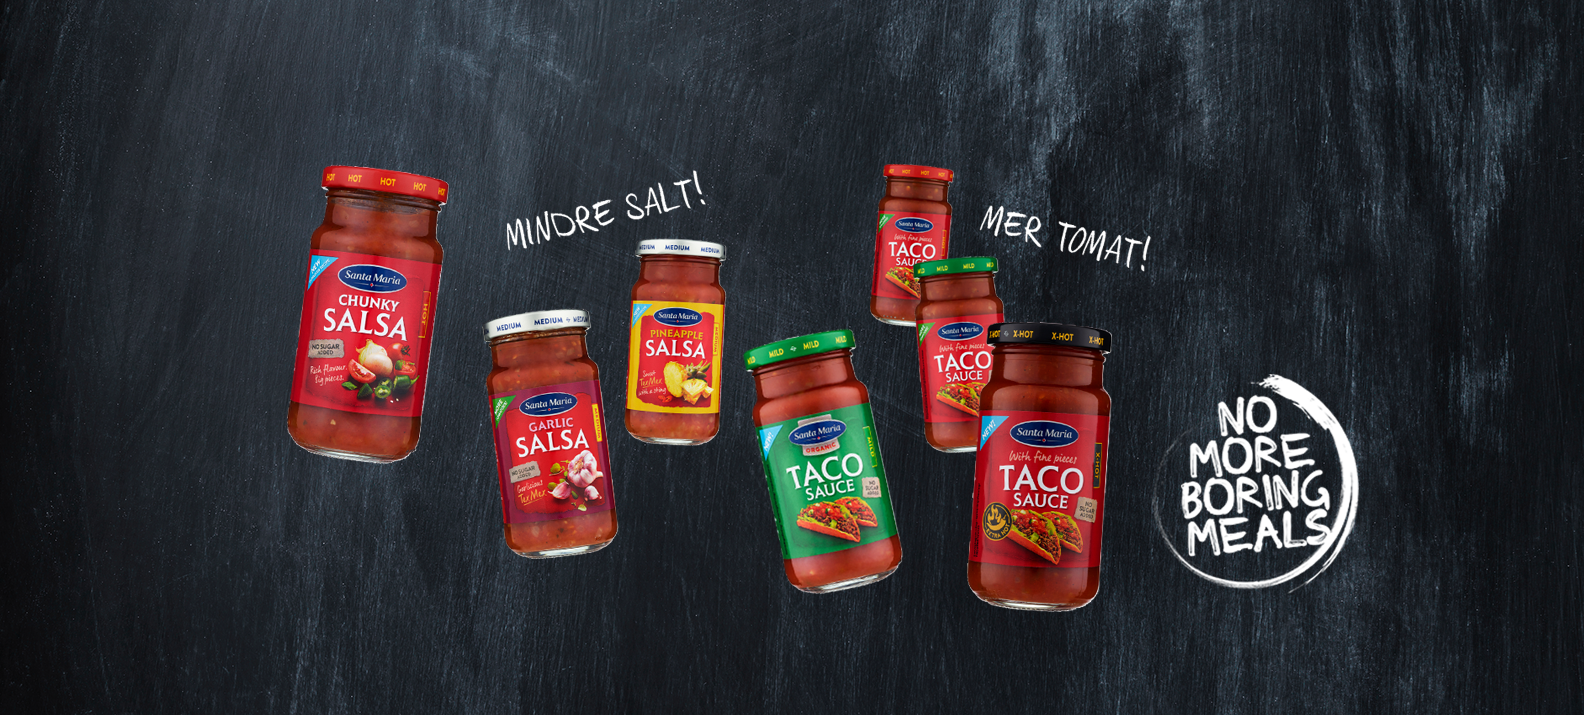 Nyheter innen tacosaus og salsa